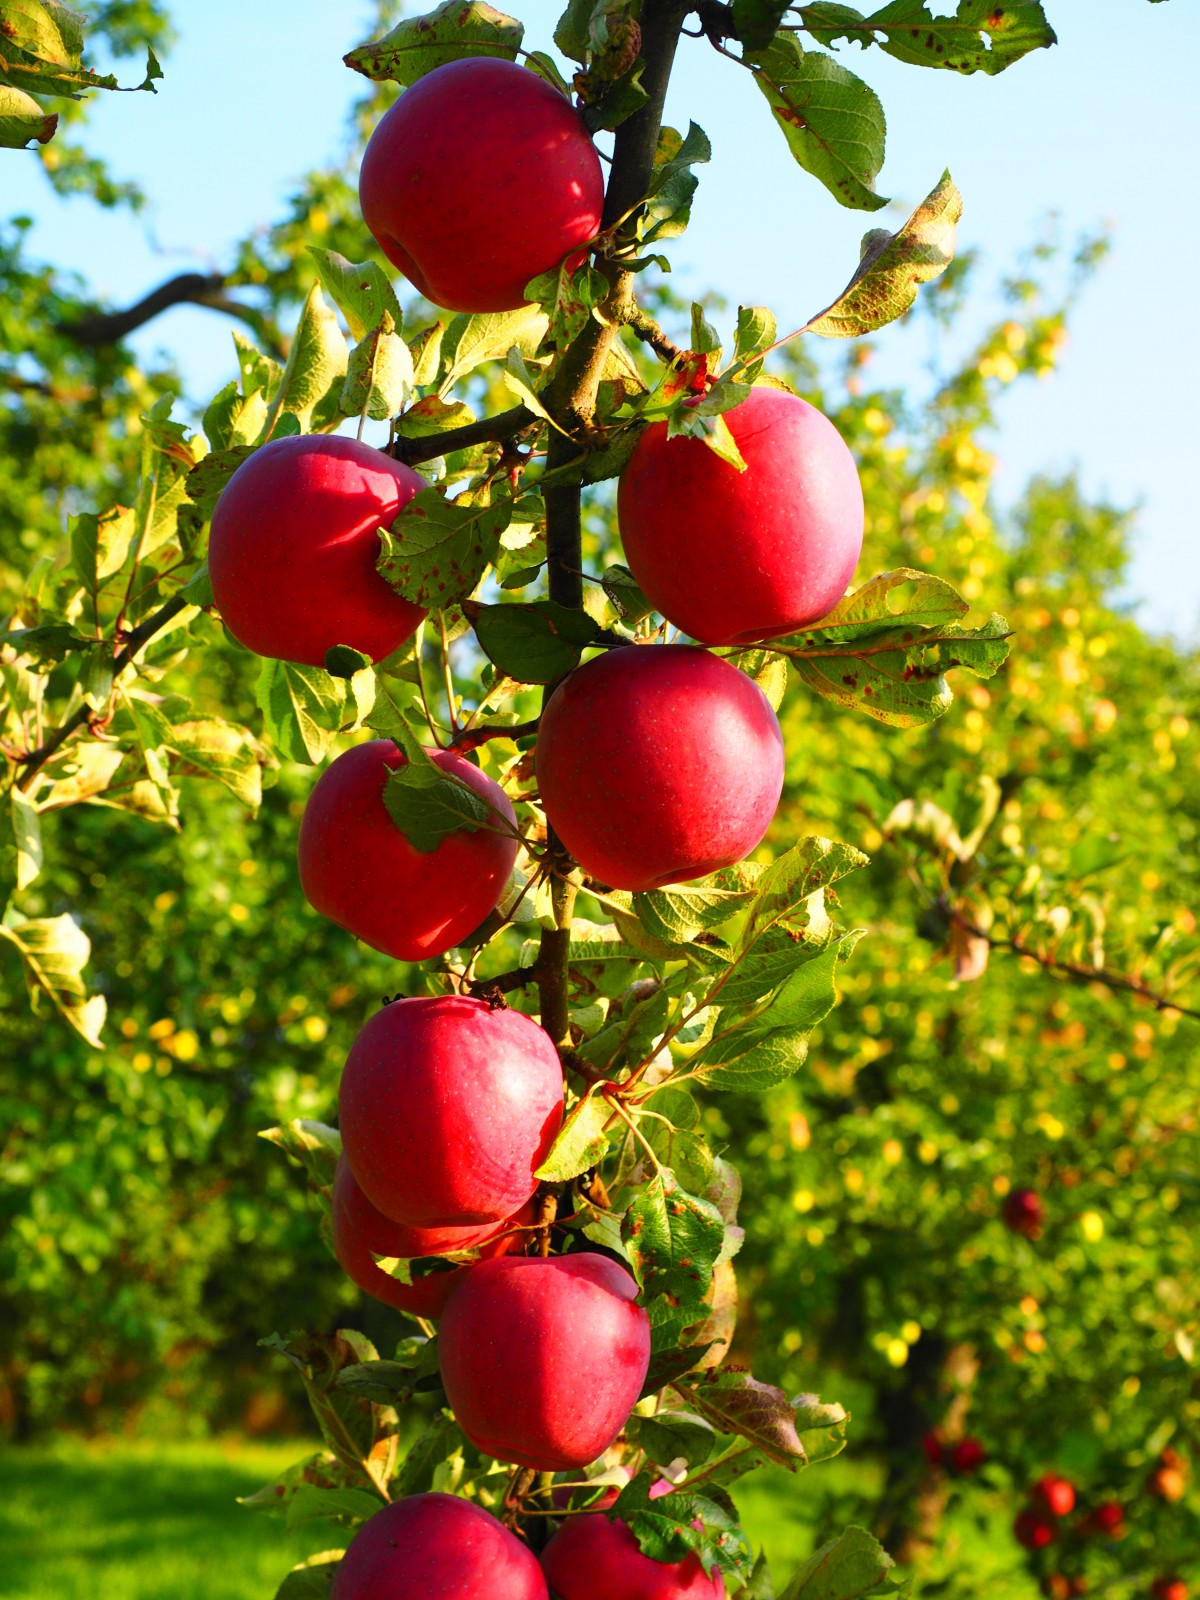 Hình ảnh cây táo đỏ sai trĩu quả